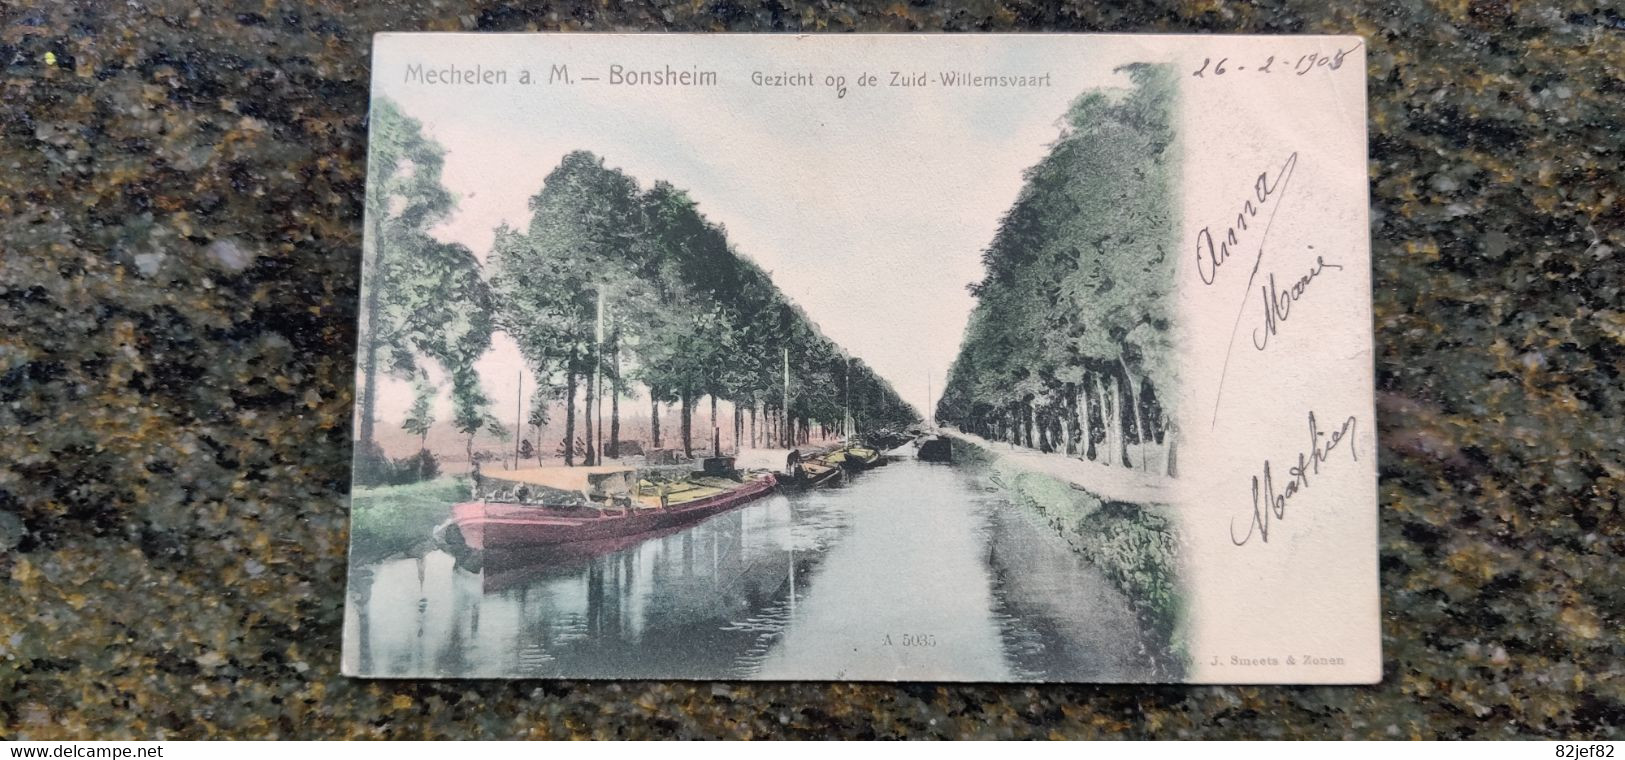 Mechelen Aan De Maas Bonsheim Gezicht Op De Zuid Willemsvaart 1905 Binnenschip Peniche - Maasmechelen